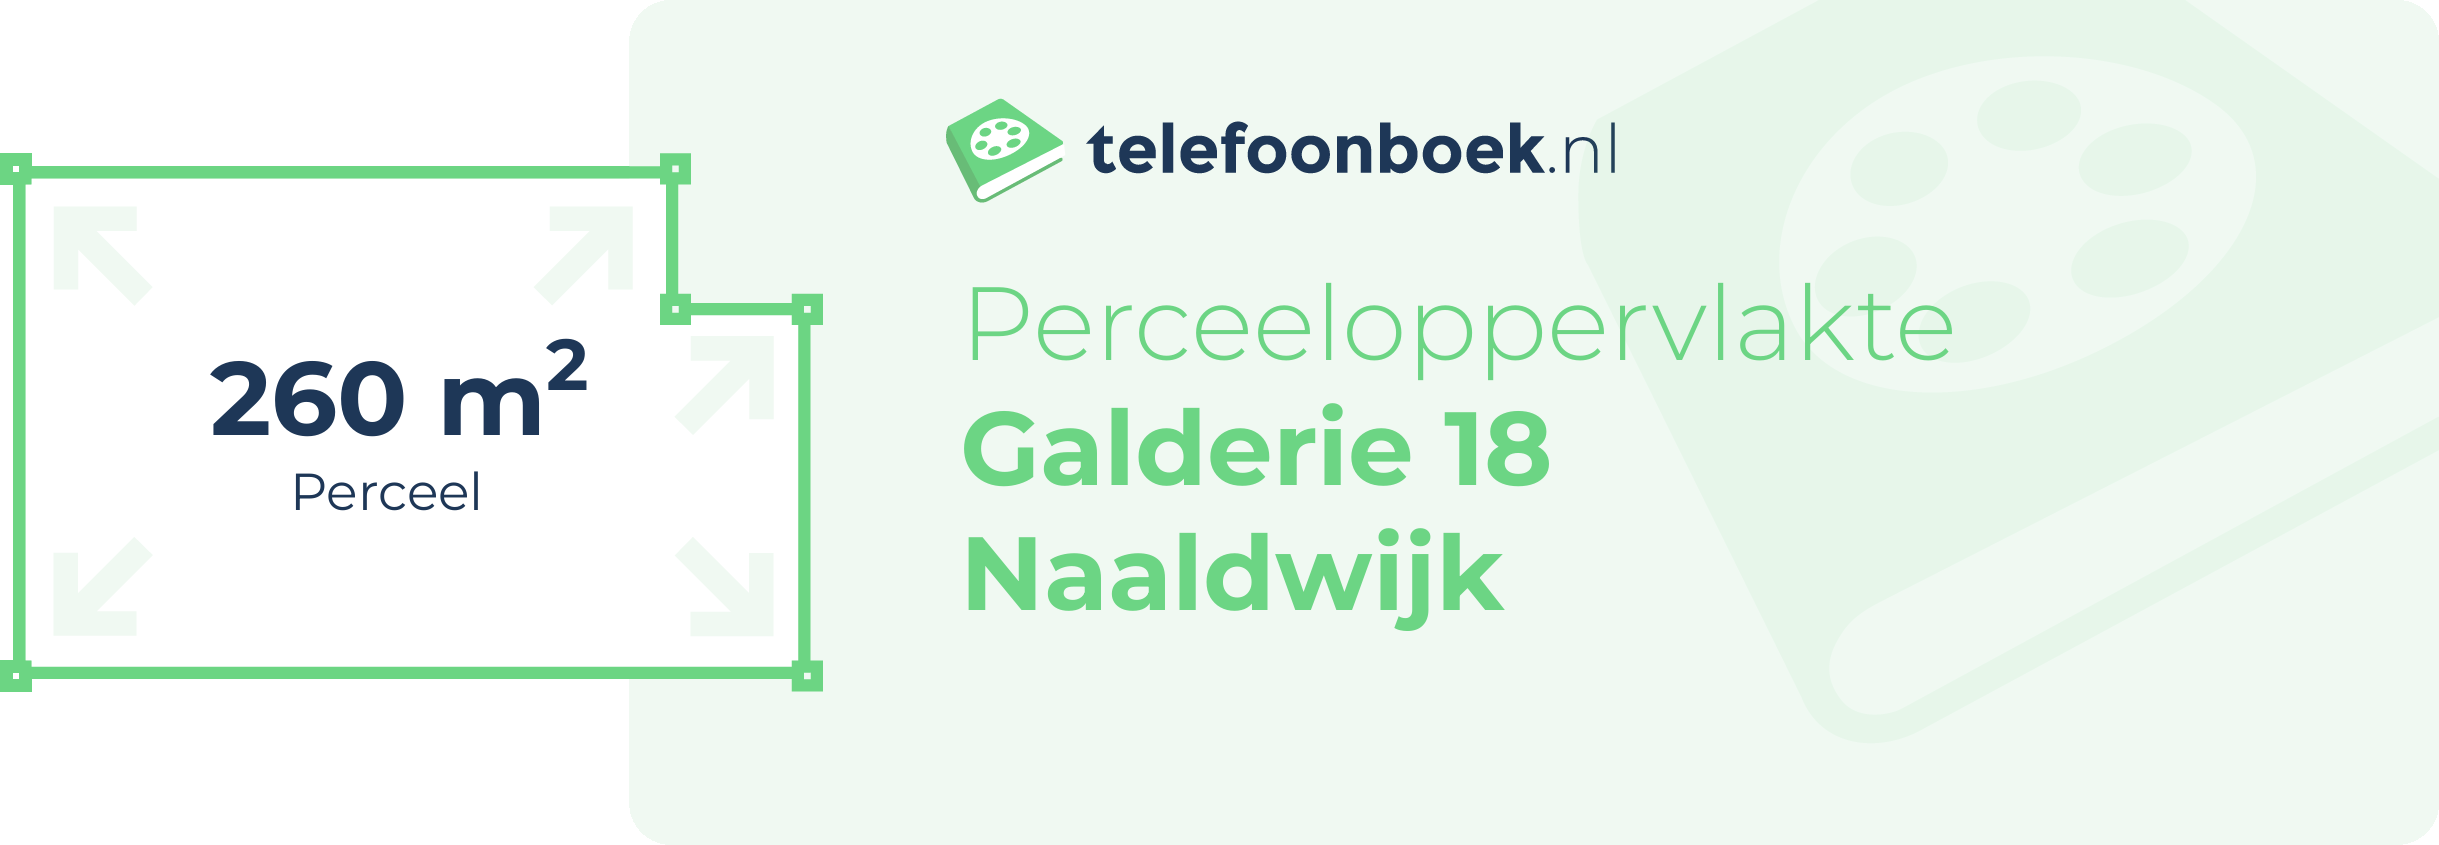 Perceeloppervlakte Galderie 18 Naaldwijk